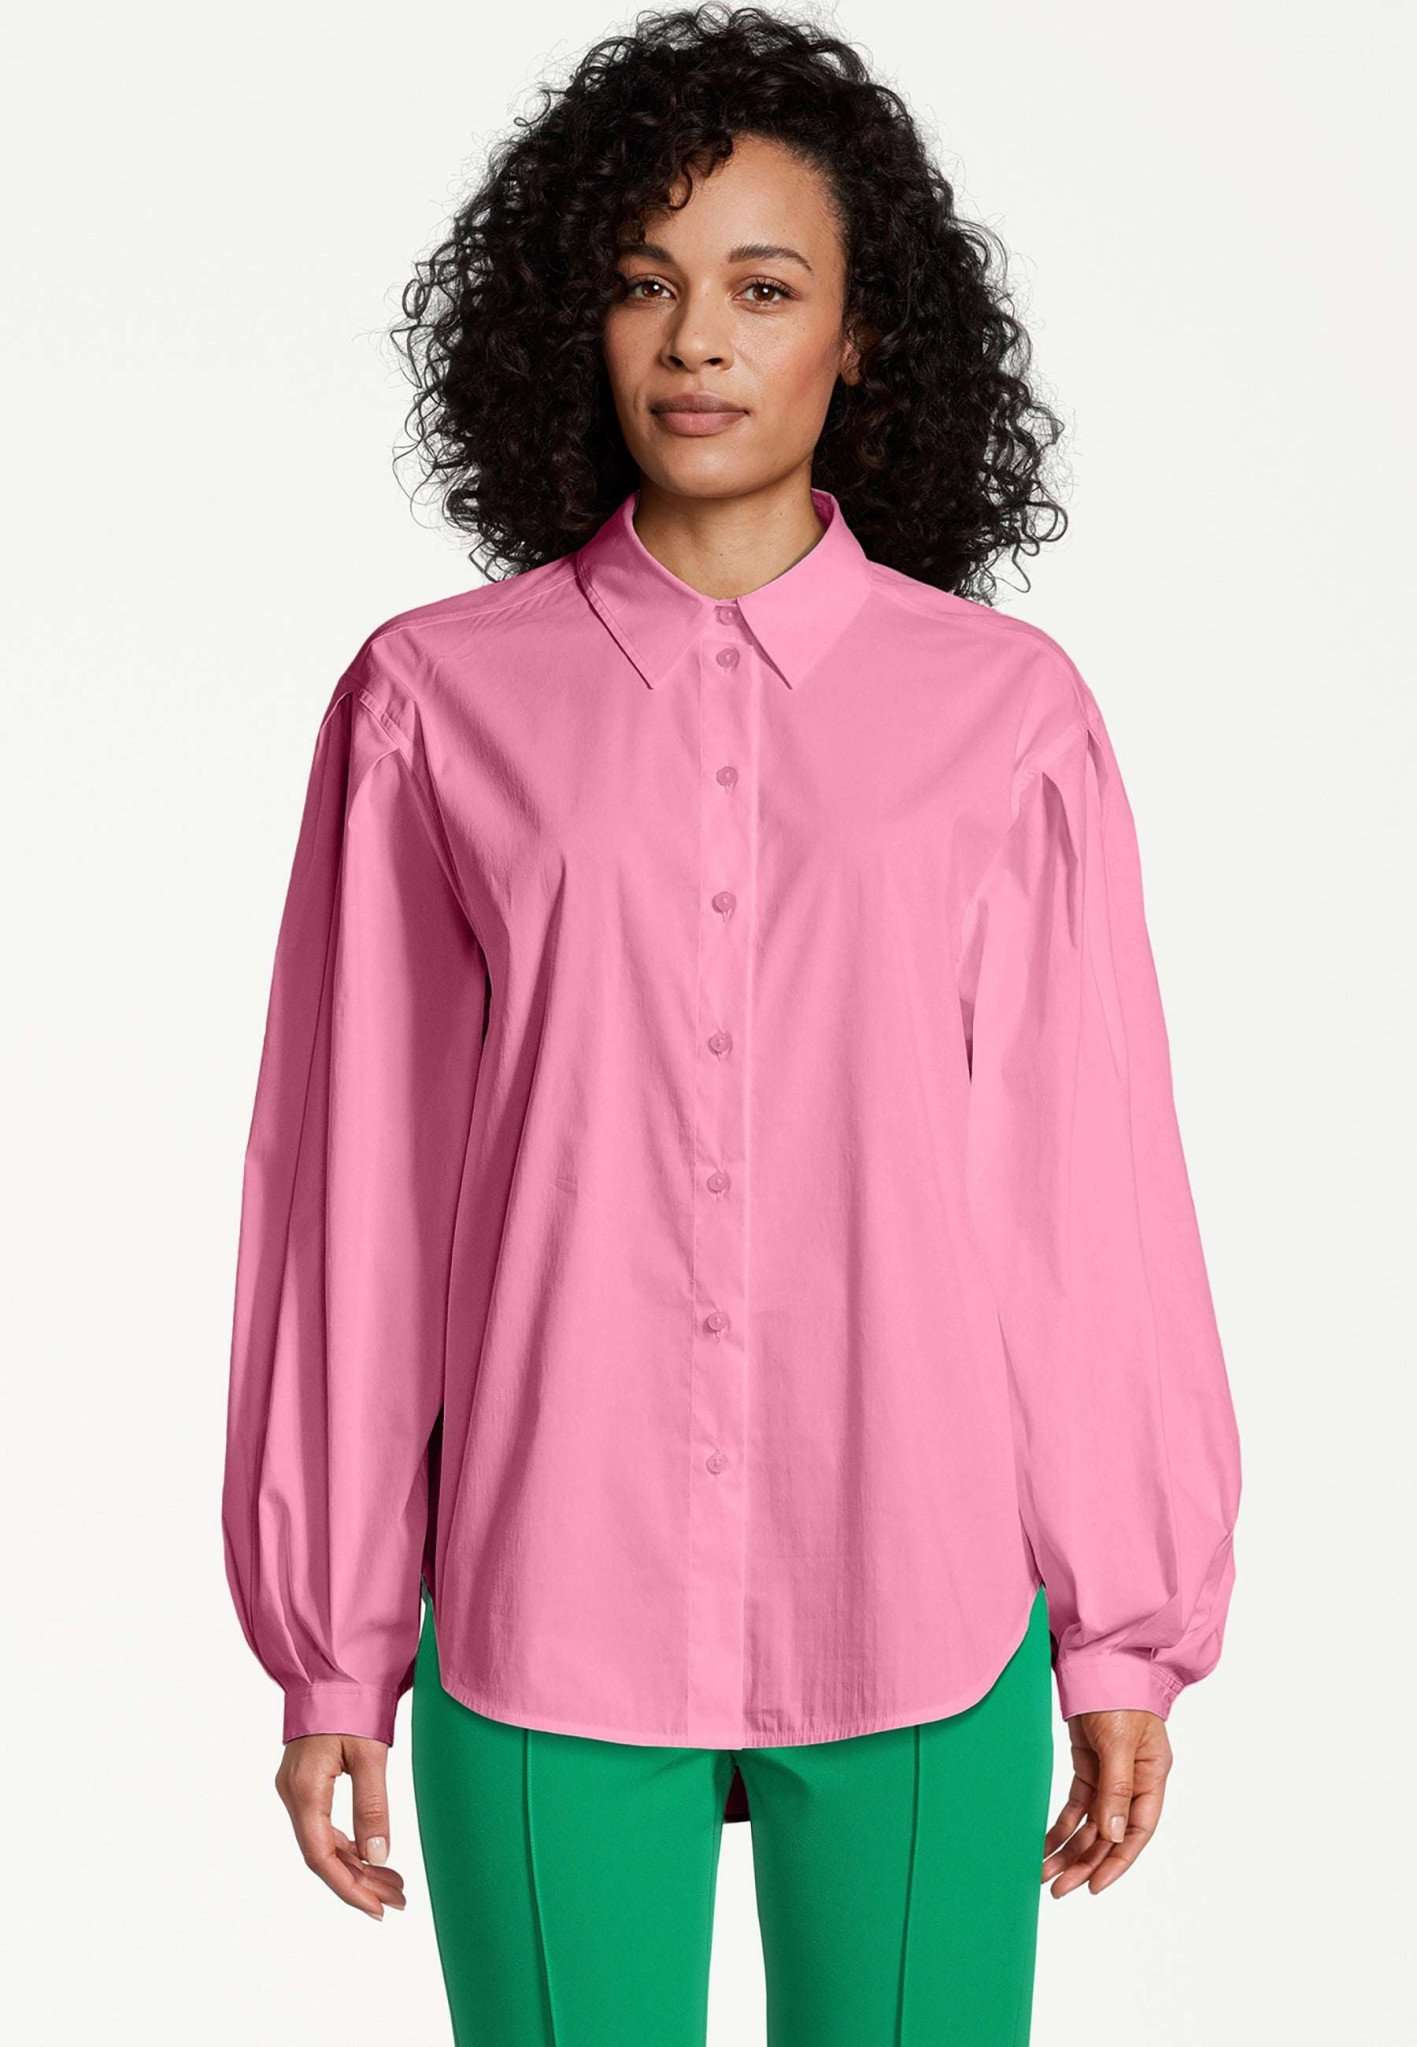 Arkadia Oversized Blouse in Pink Carnation Hemden Tamaris   